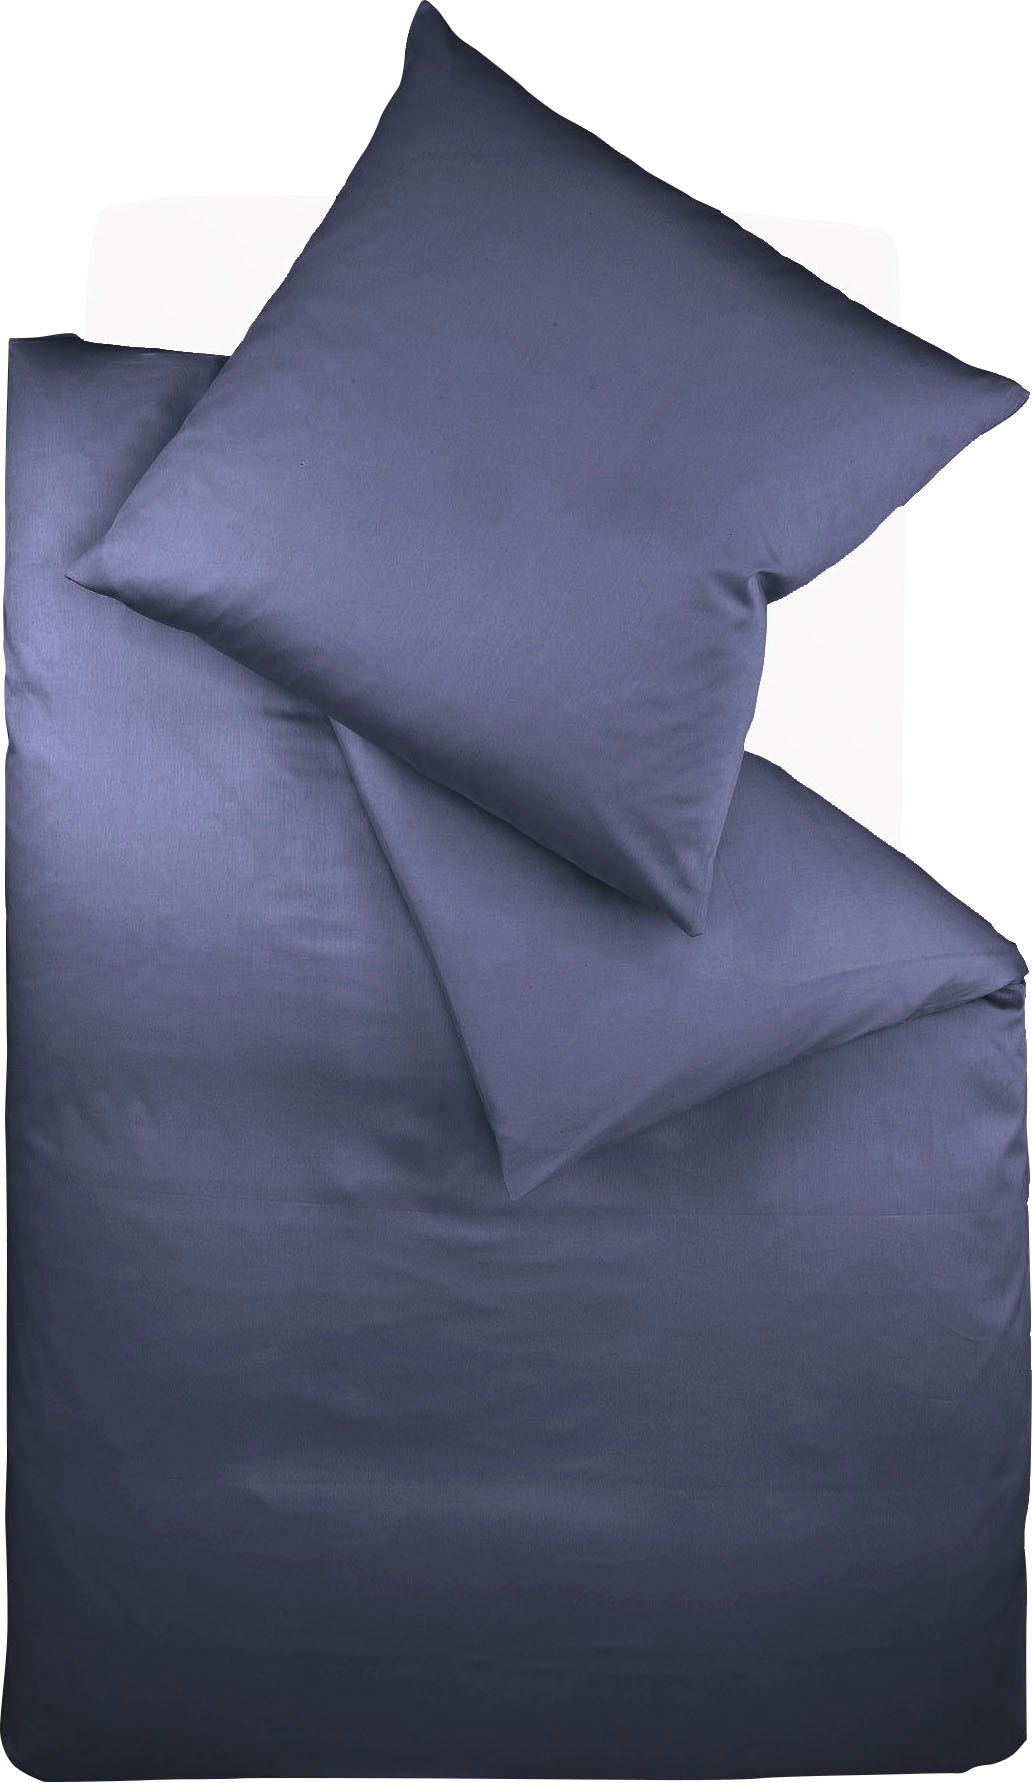 Fleuresse 9200 Colours Interlock Jersey Bettwäsche aus 100% Baumwolle, Oekotex Standard 100, dunkelblau, 155 x 200 cm